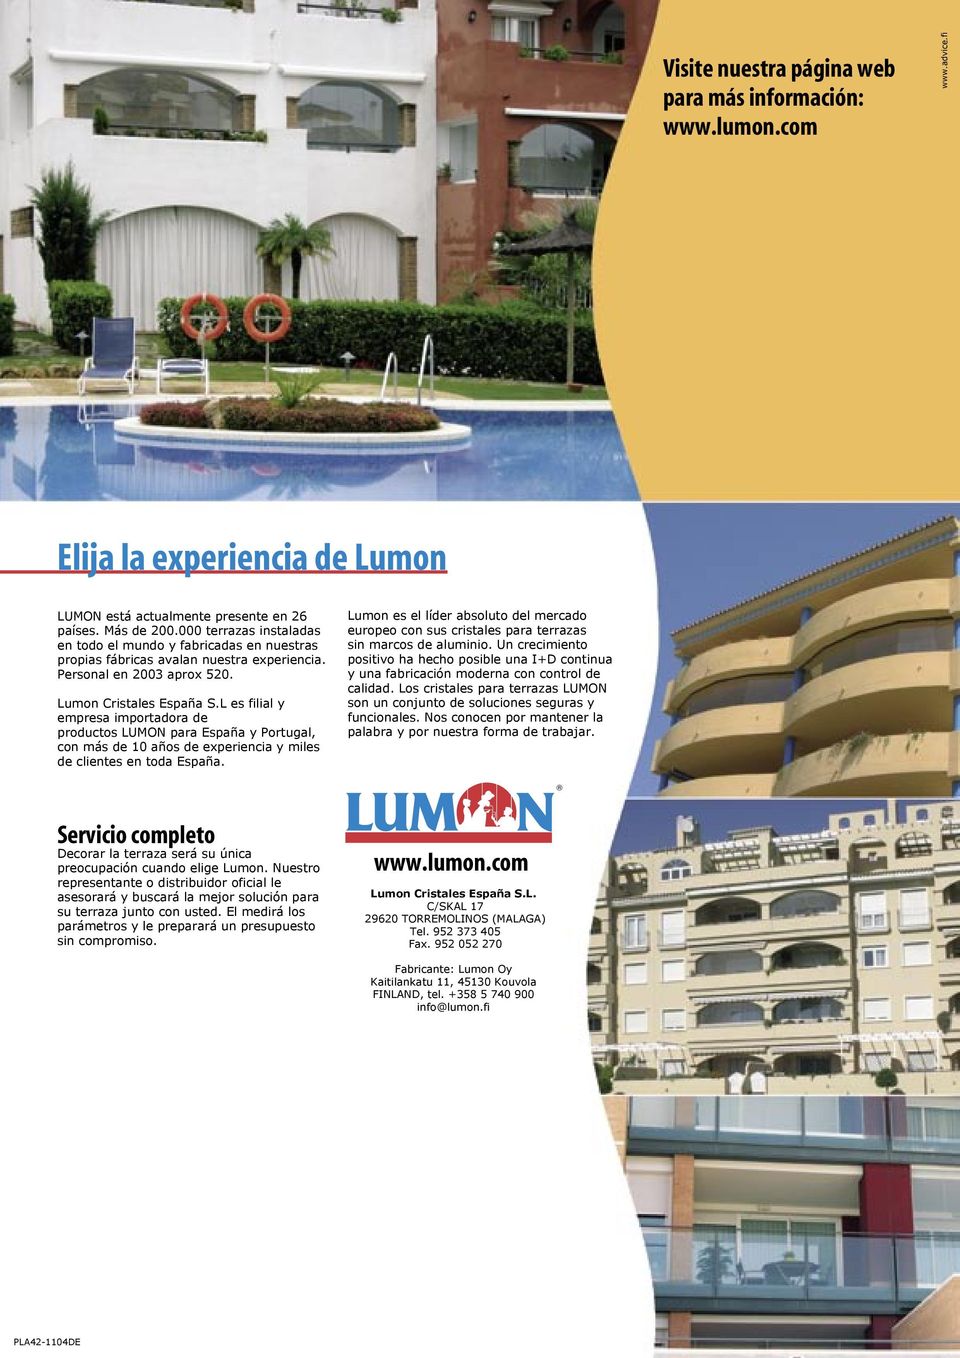 L es filial y empresa importadora de productos LUMON para España y Portugal, con más de 10 años de experiencia y miles de clientes en toda España.